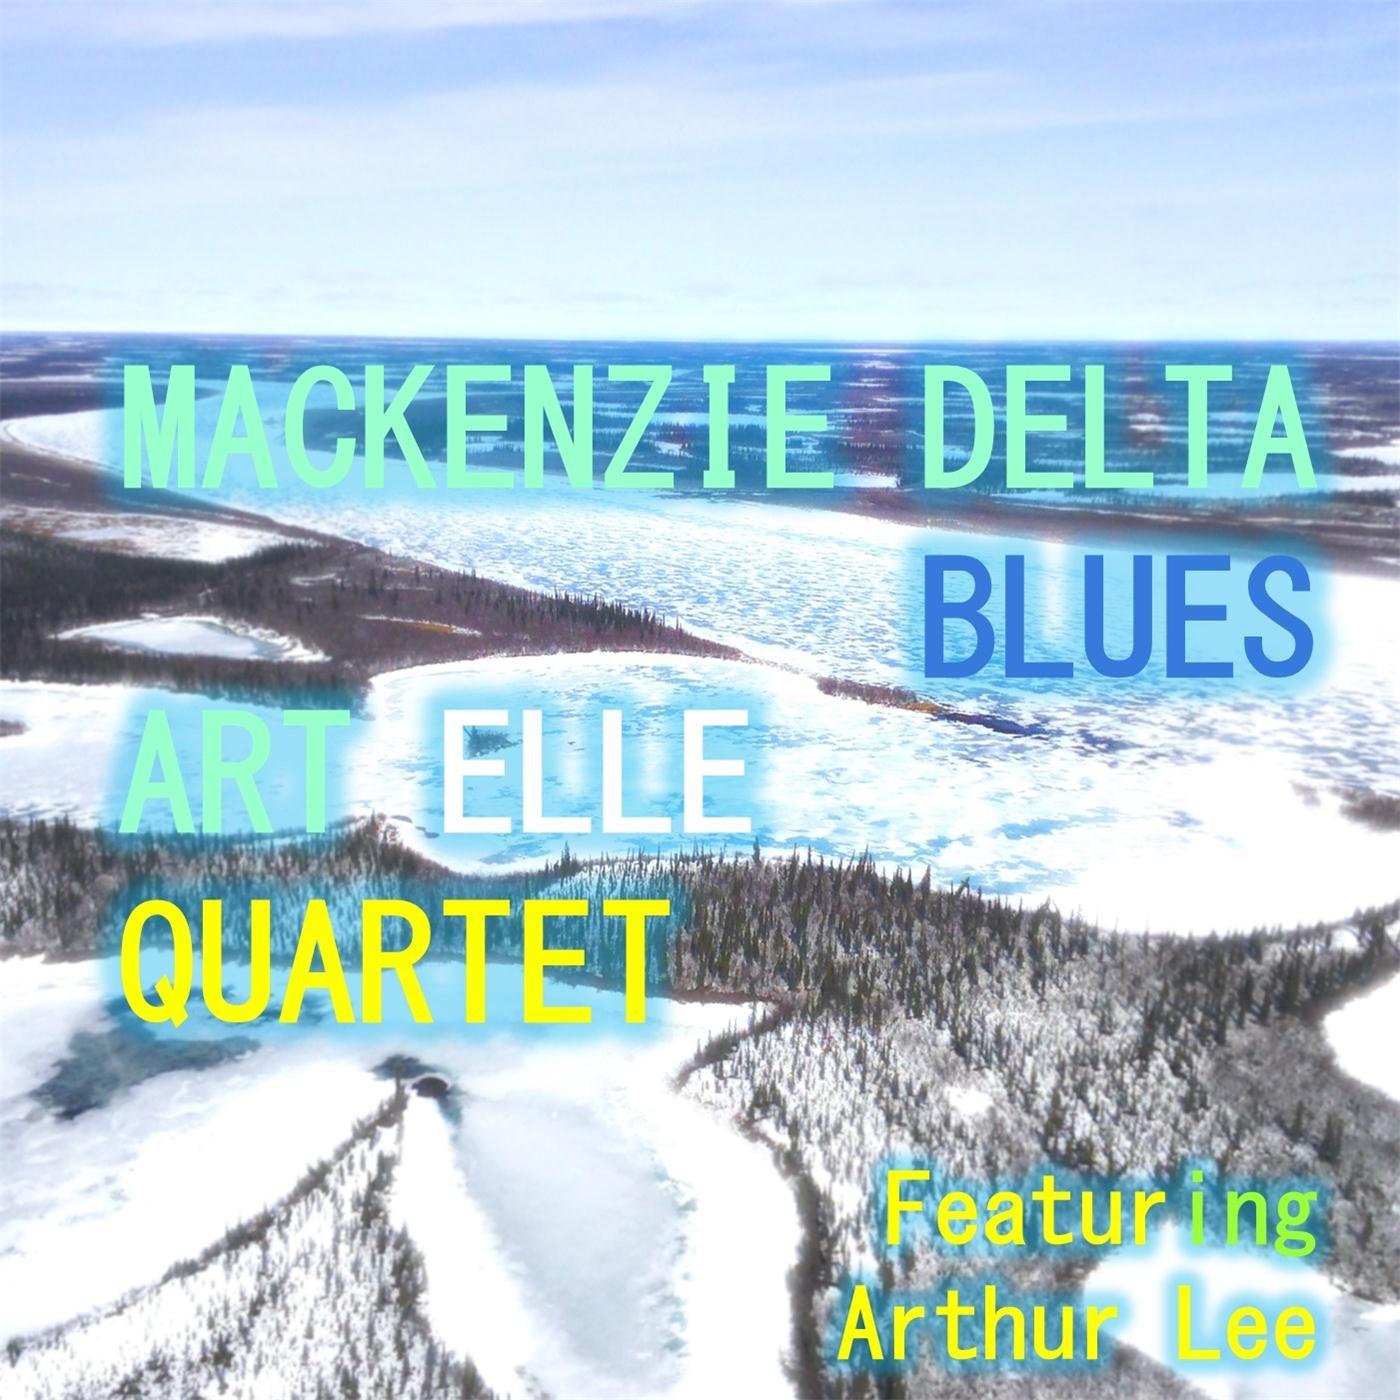 Mackenzie Delta Blues